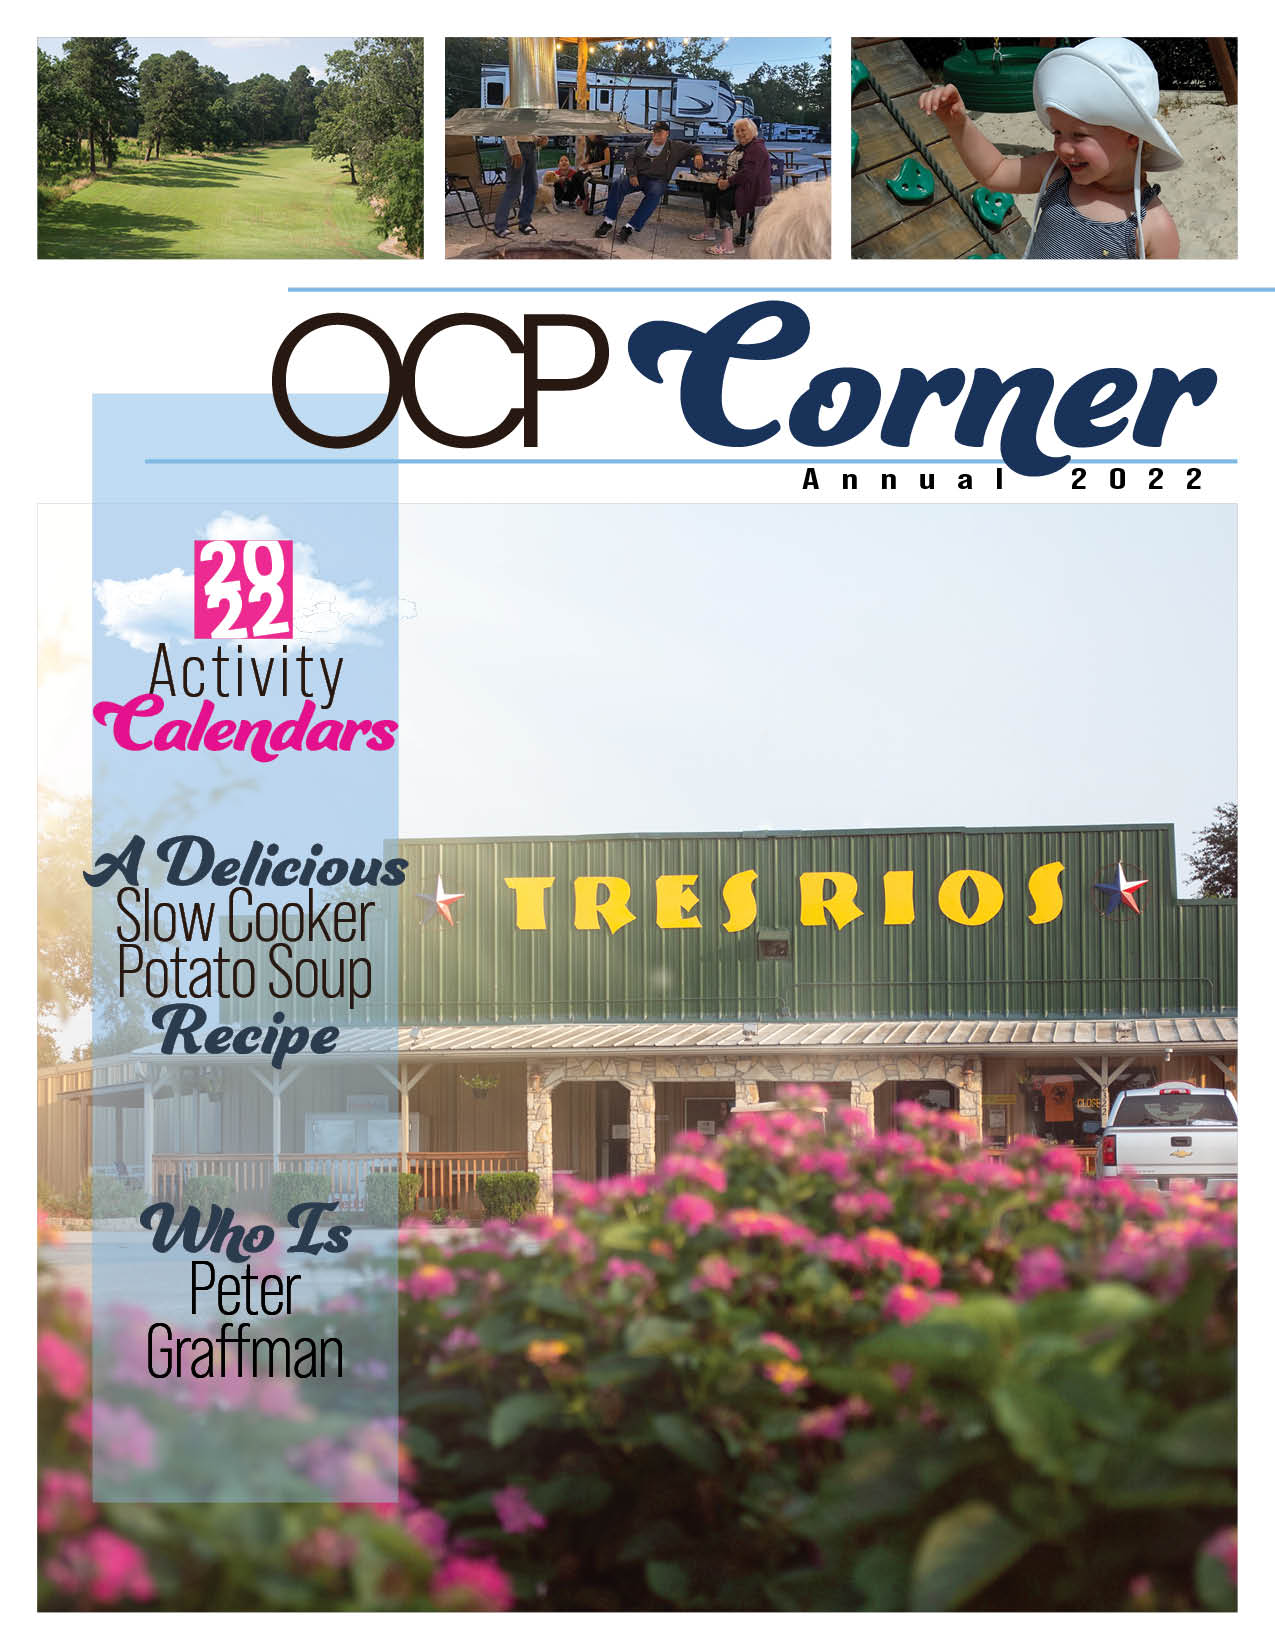 2022 Annual OCP Corner